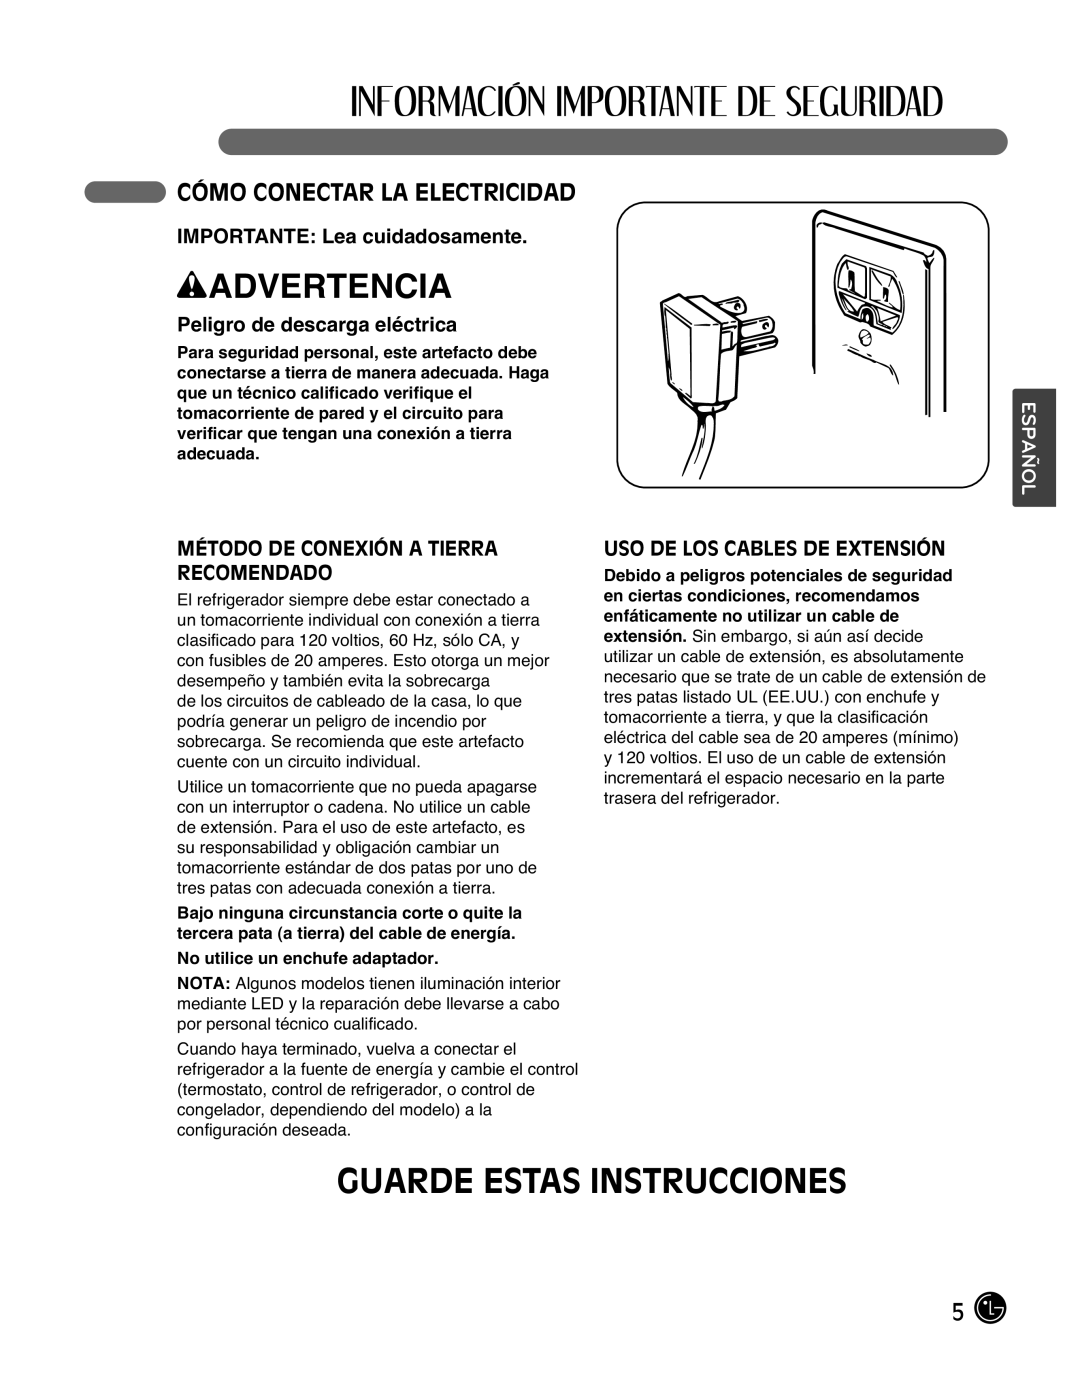 LG Electronics LMX25988ST Guarde Estas Instrucciones, Cómo Conectar La Electricidad, IMPORTANTE Lea cuidadosamente 